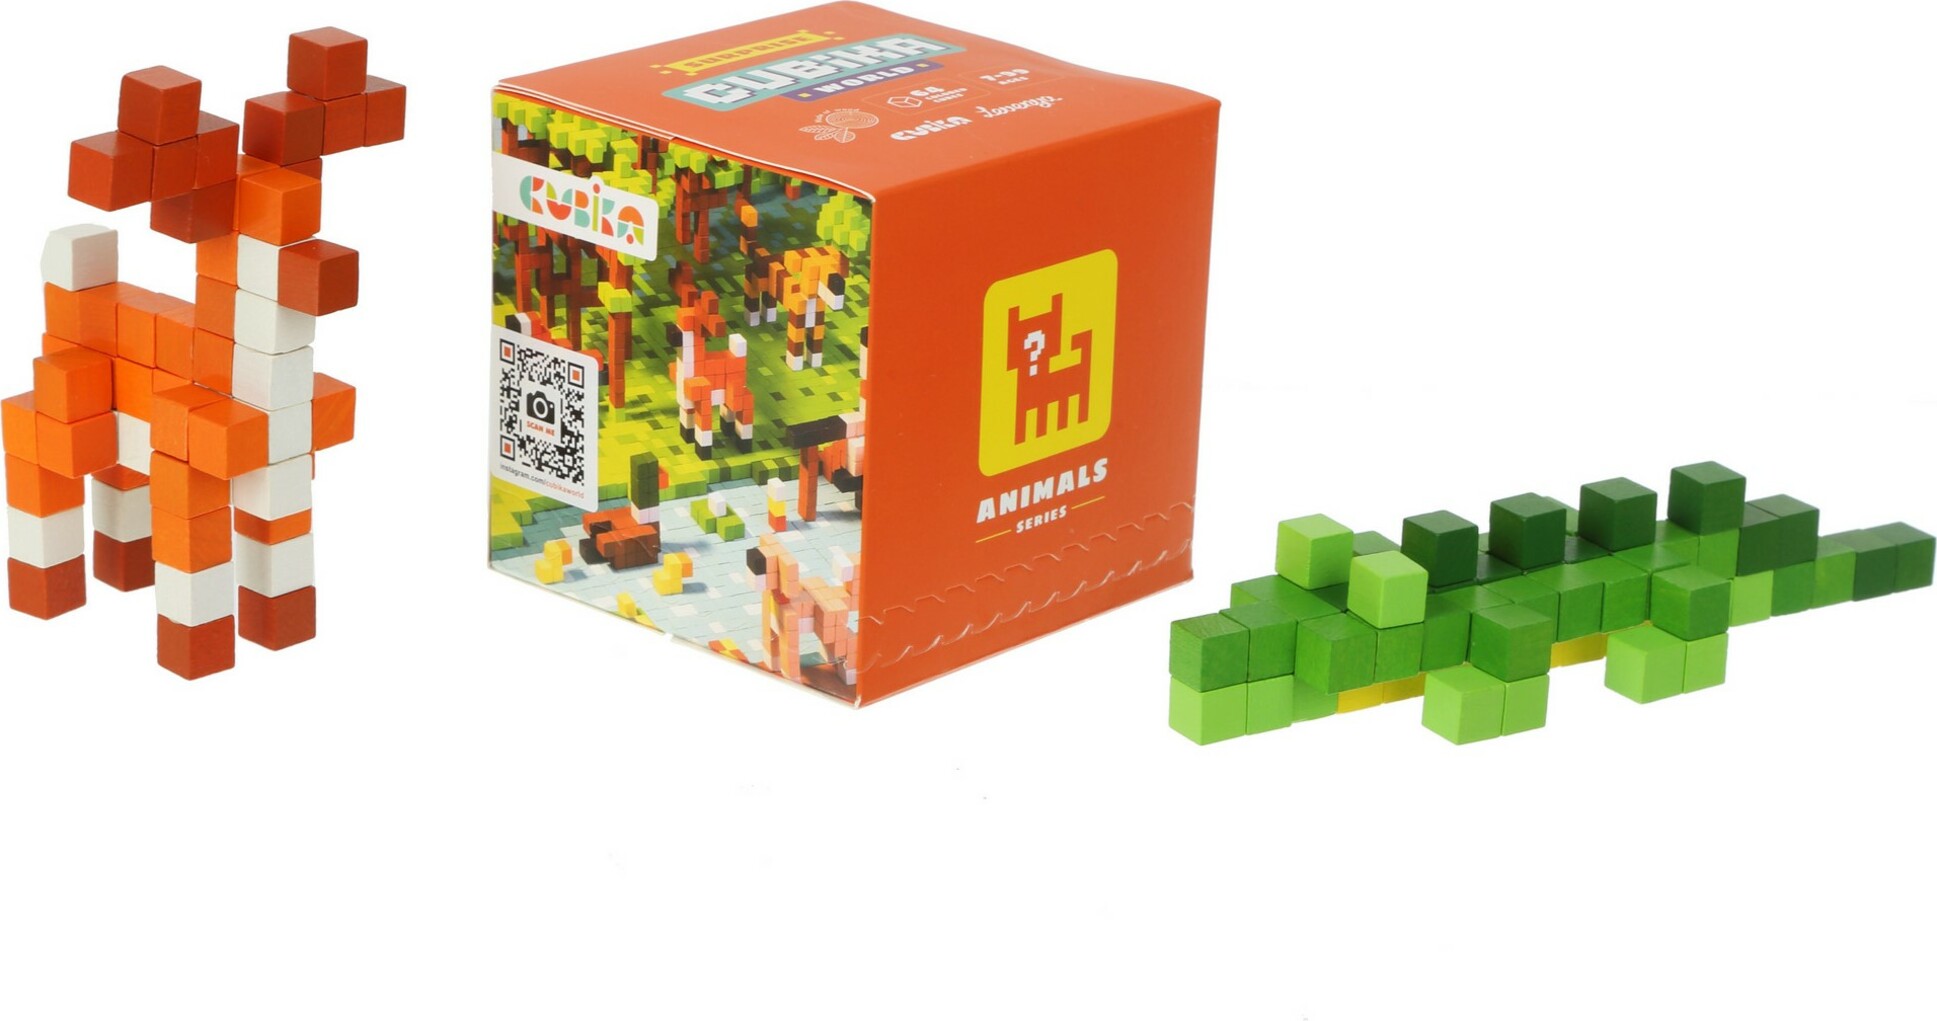 Cubik 15177 Pixel "Utajené zvířátko" - dřevěná 3D stavebnice 64 kostek